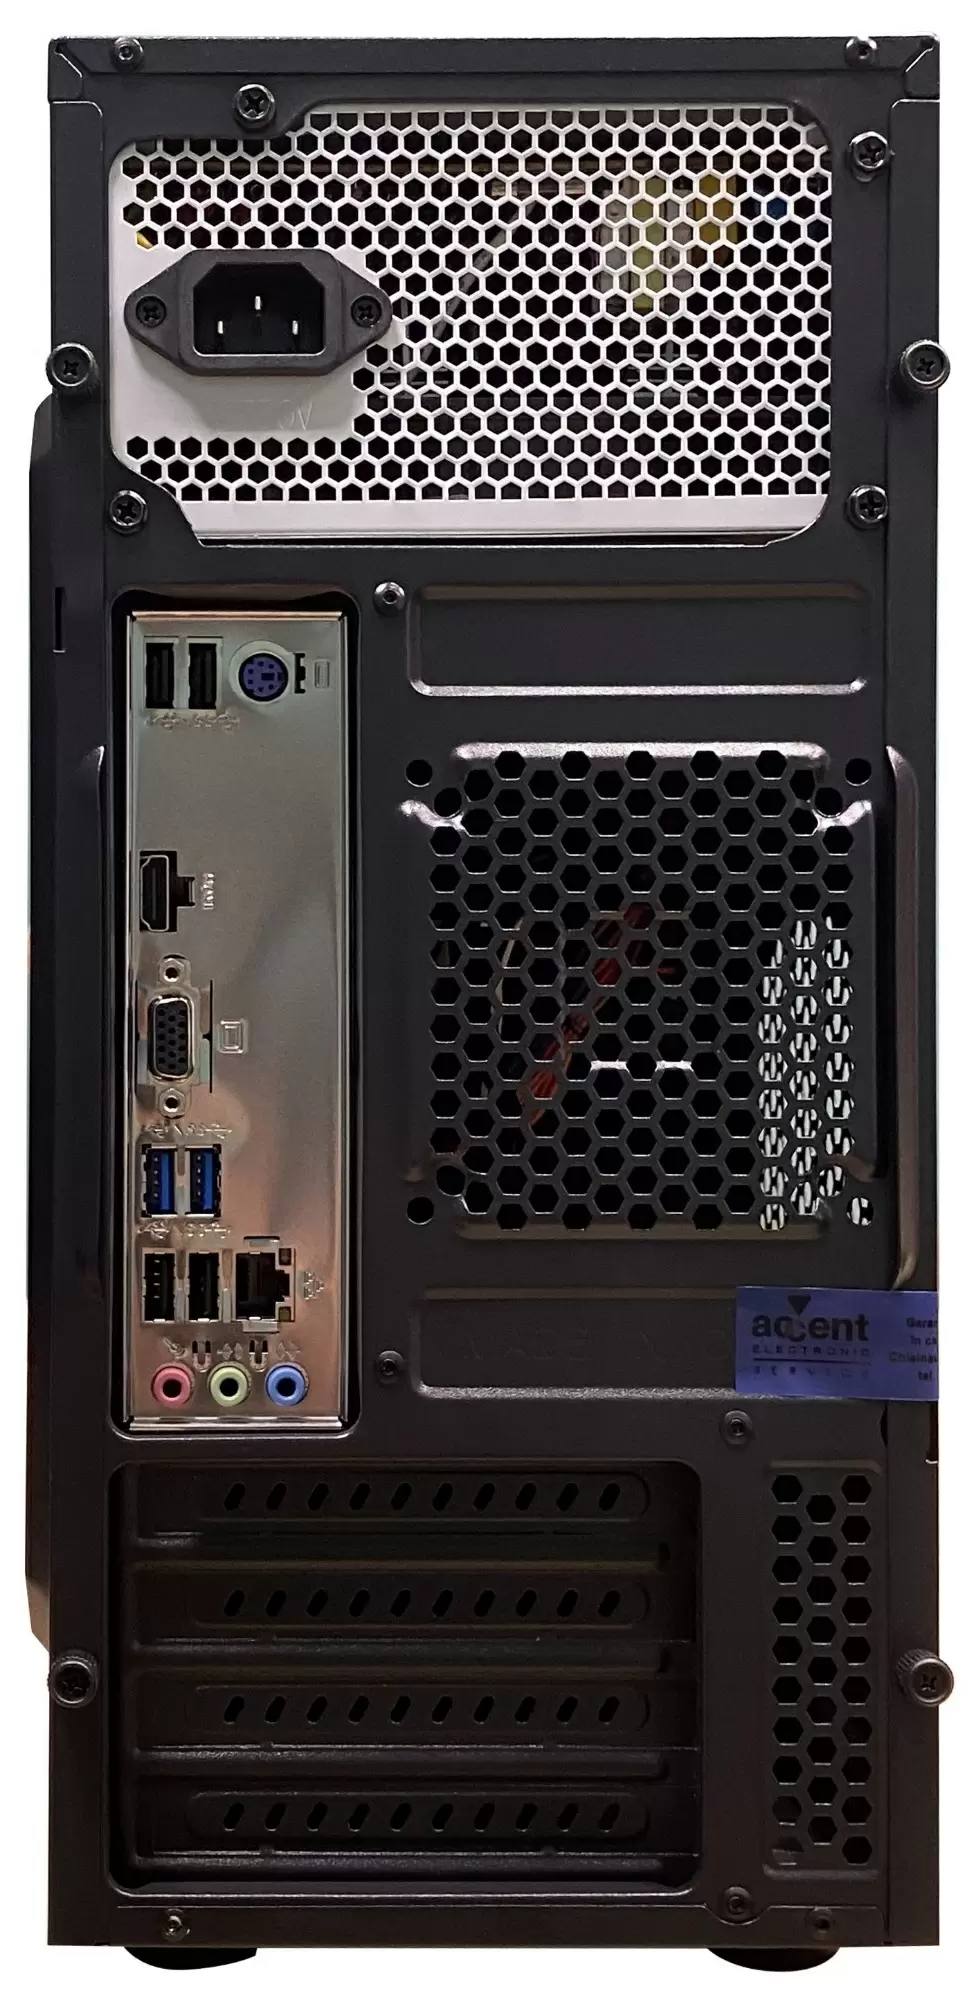 Системный блок Atol PC1017MP (AMD A4-3350B/4ГБ/240ГБ/Linux), черный